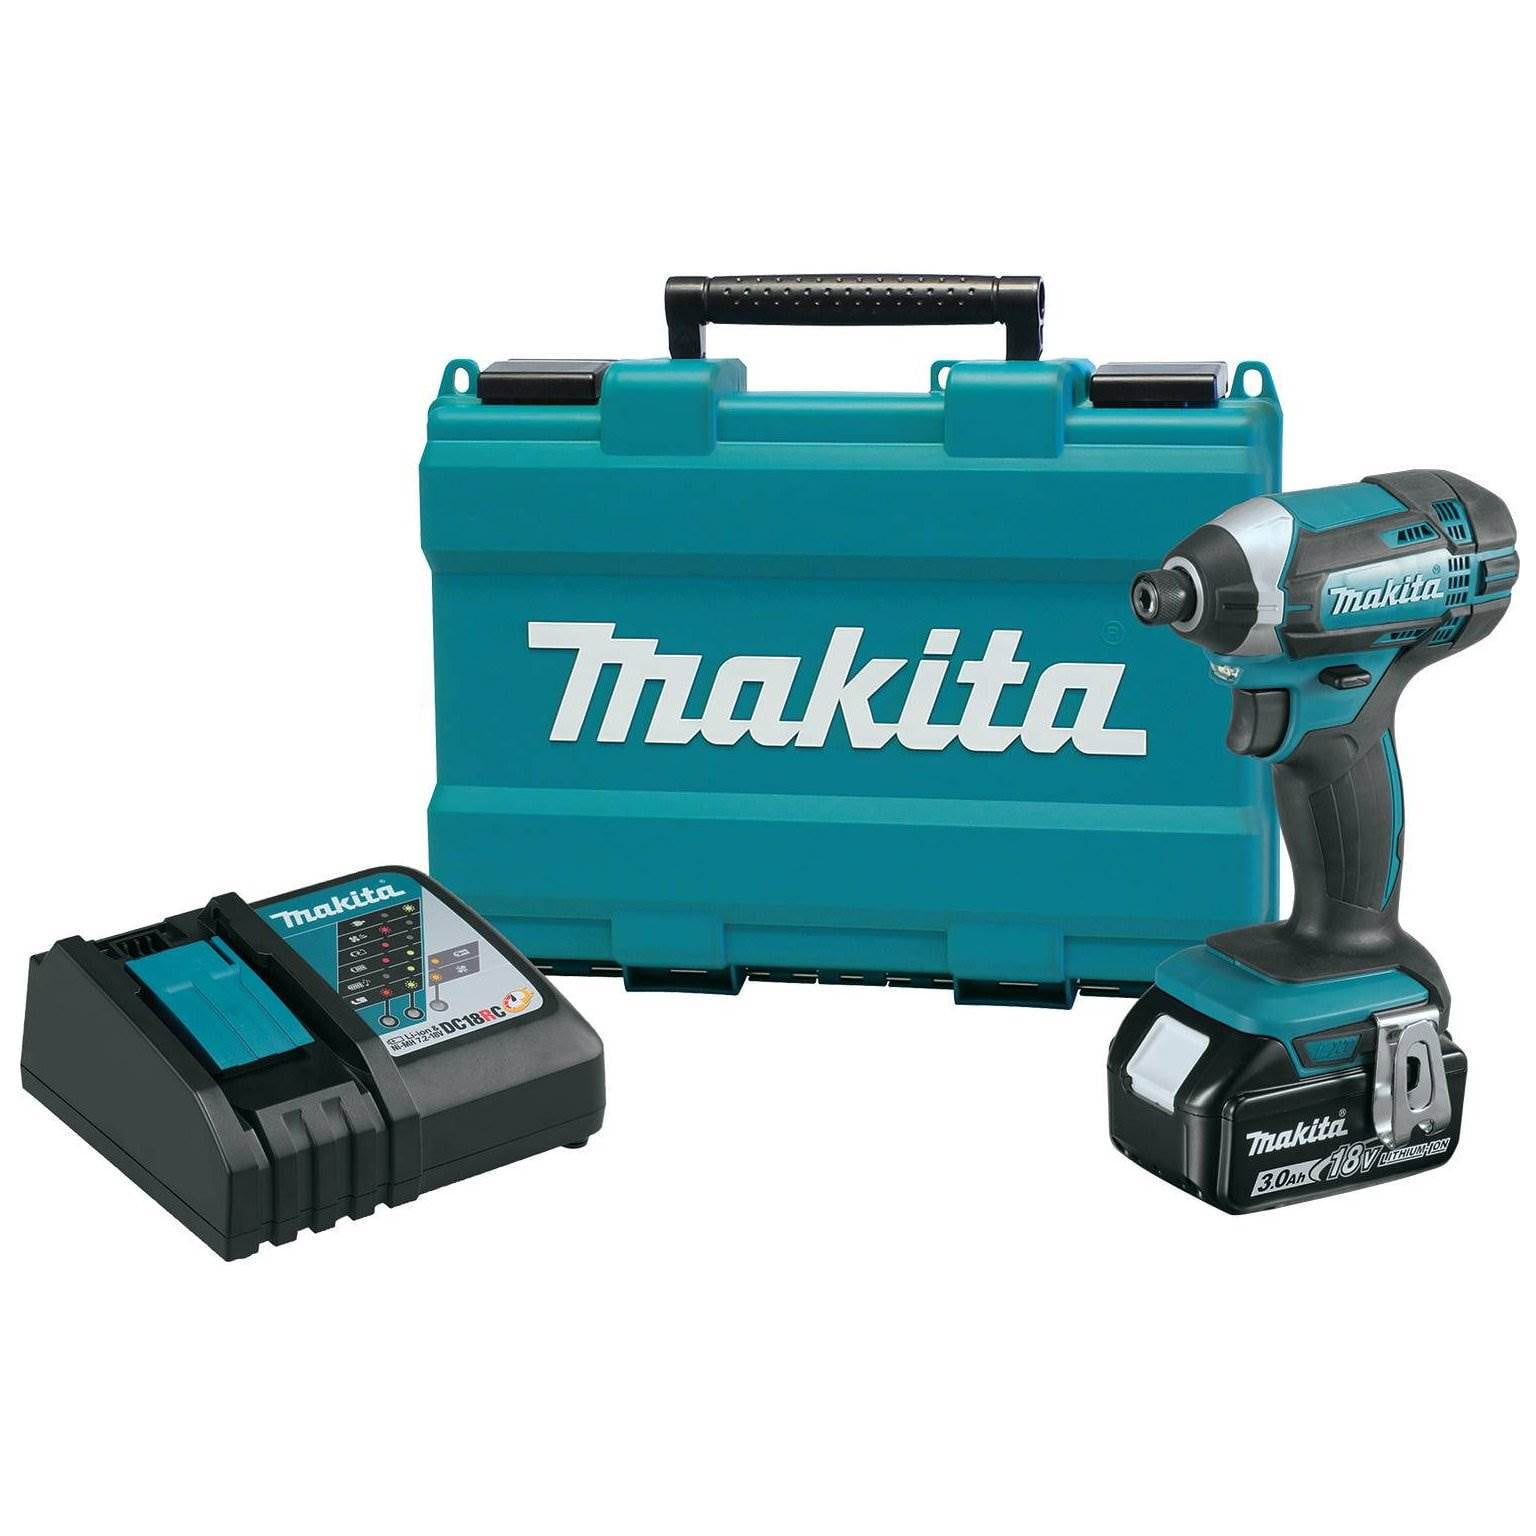 3.0Ah Makita XDT131 18V LXT Lithium-Ion Brushless Cordless Impact Driver Kit